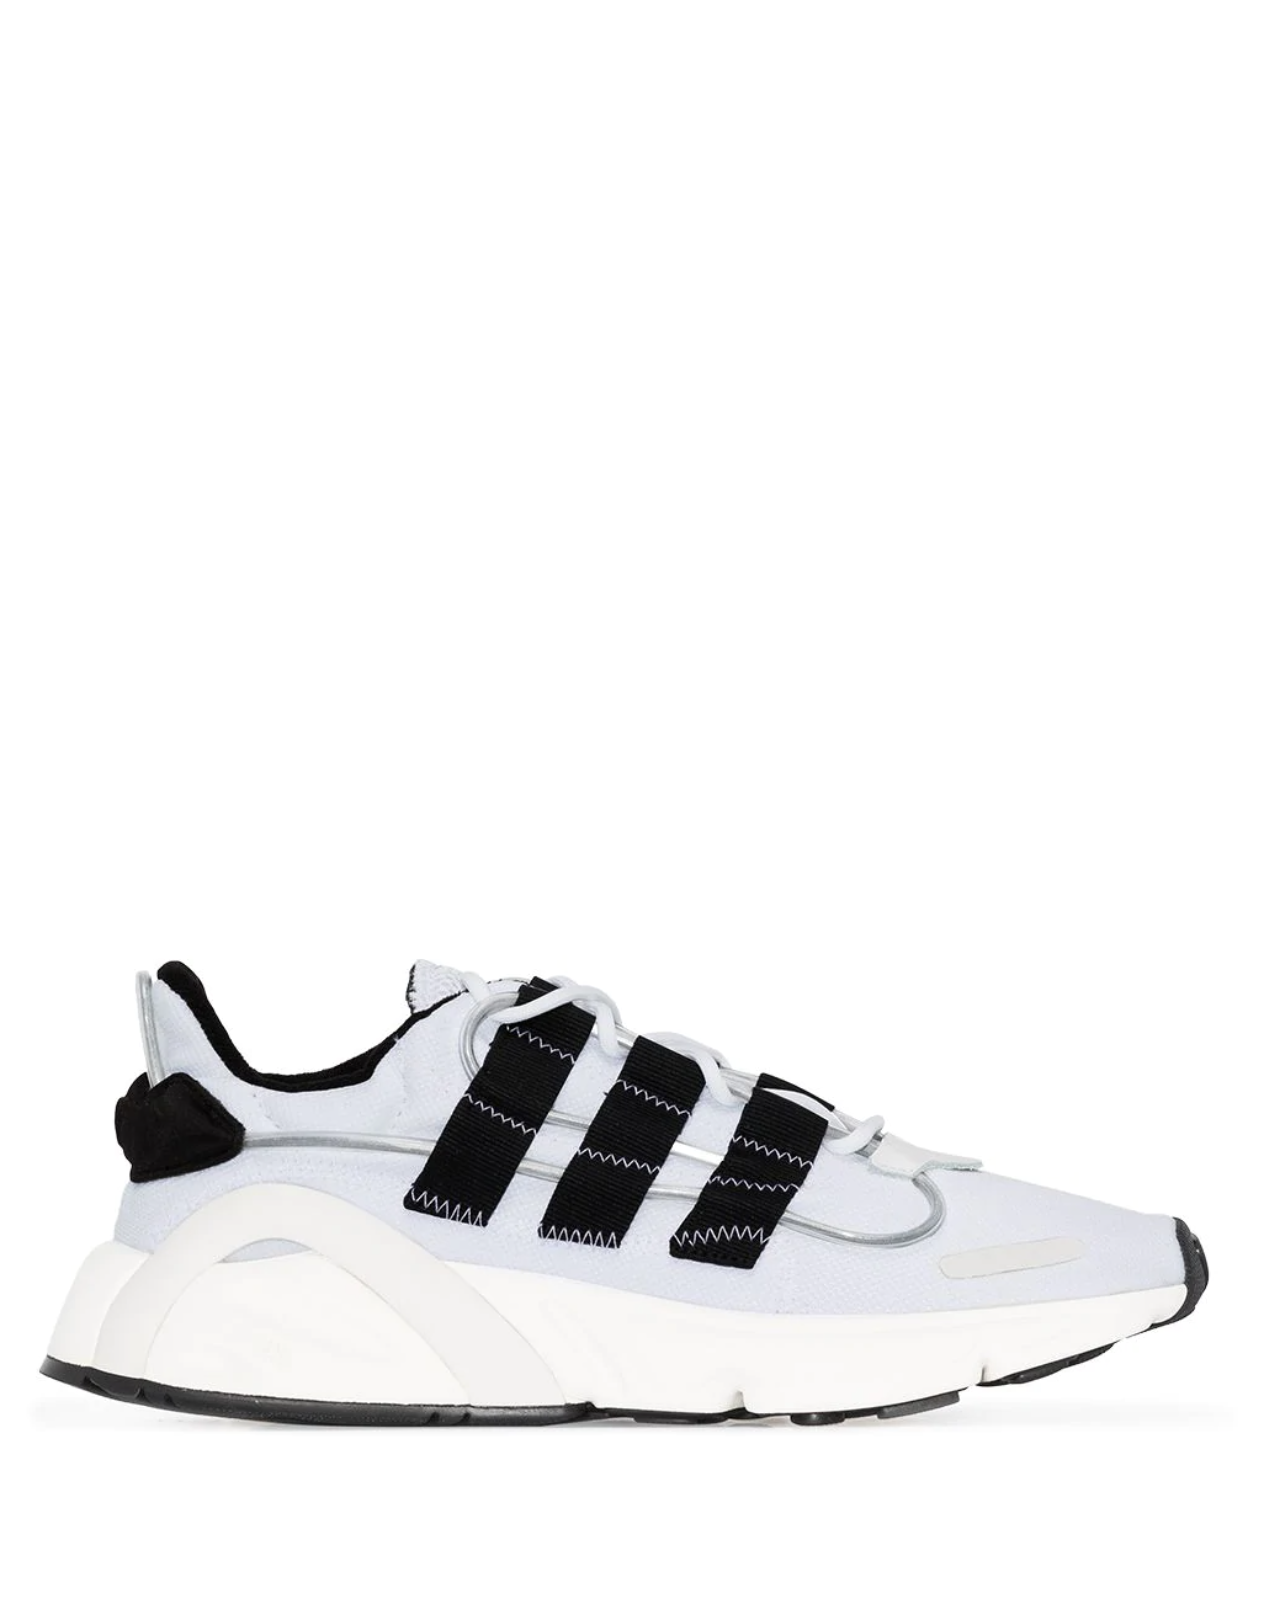 adidas lxcon white black